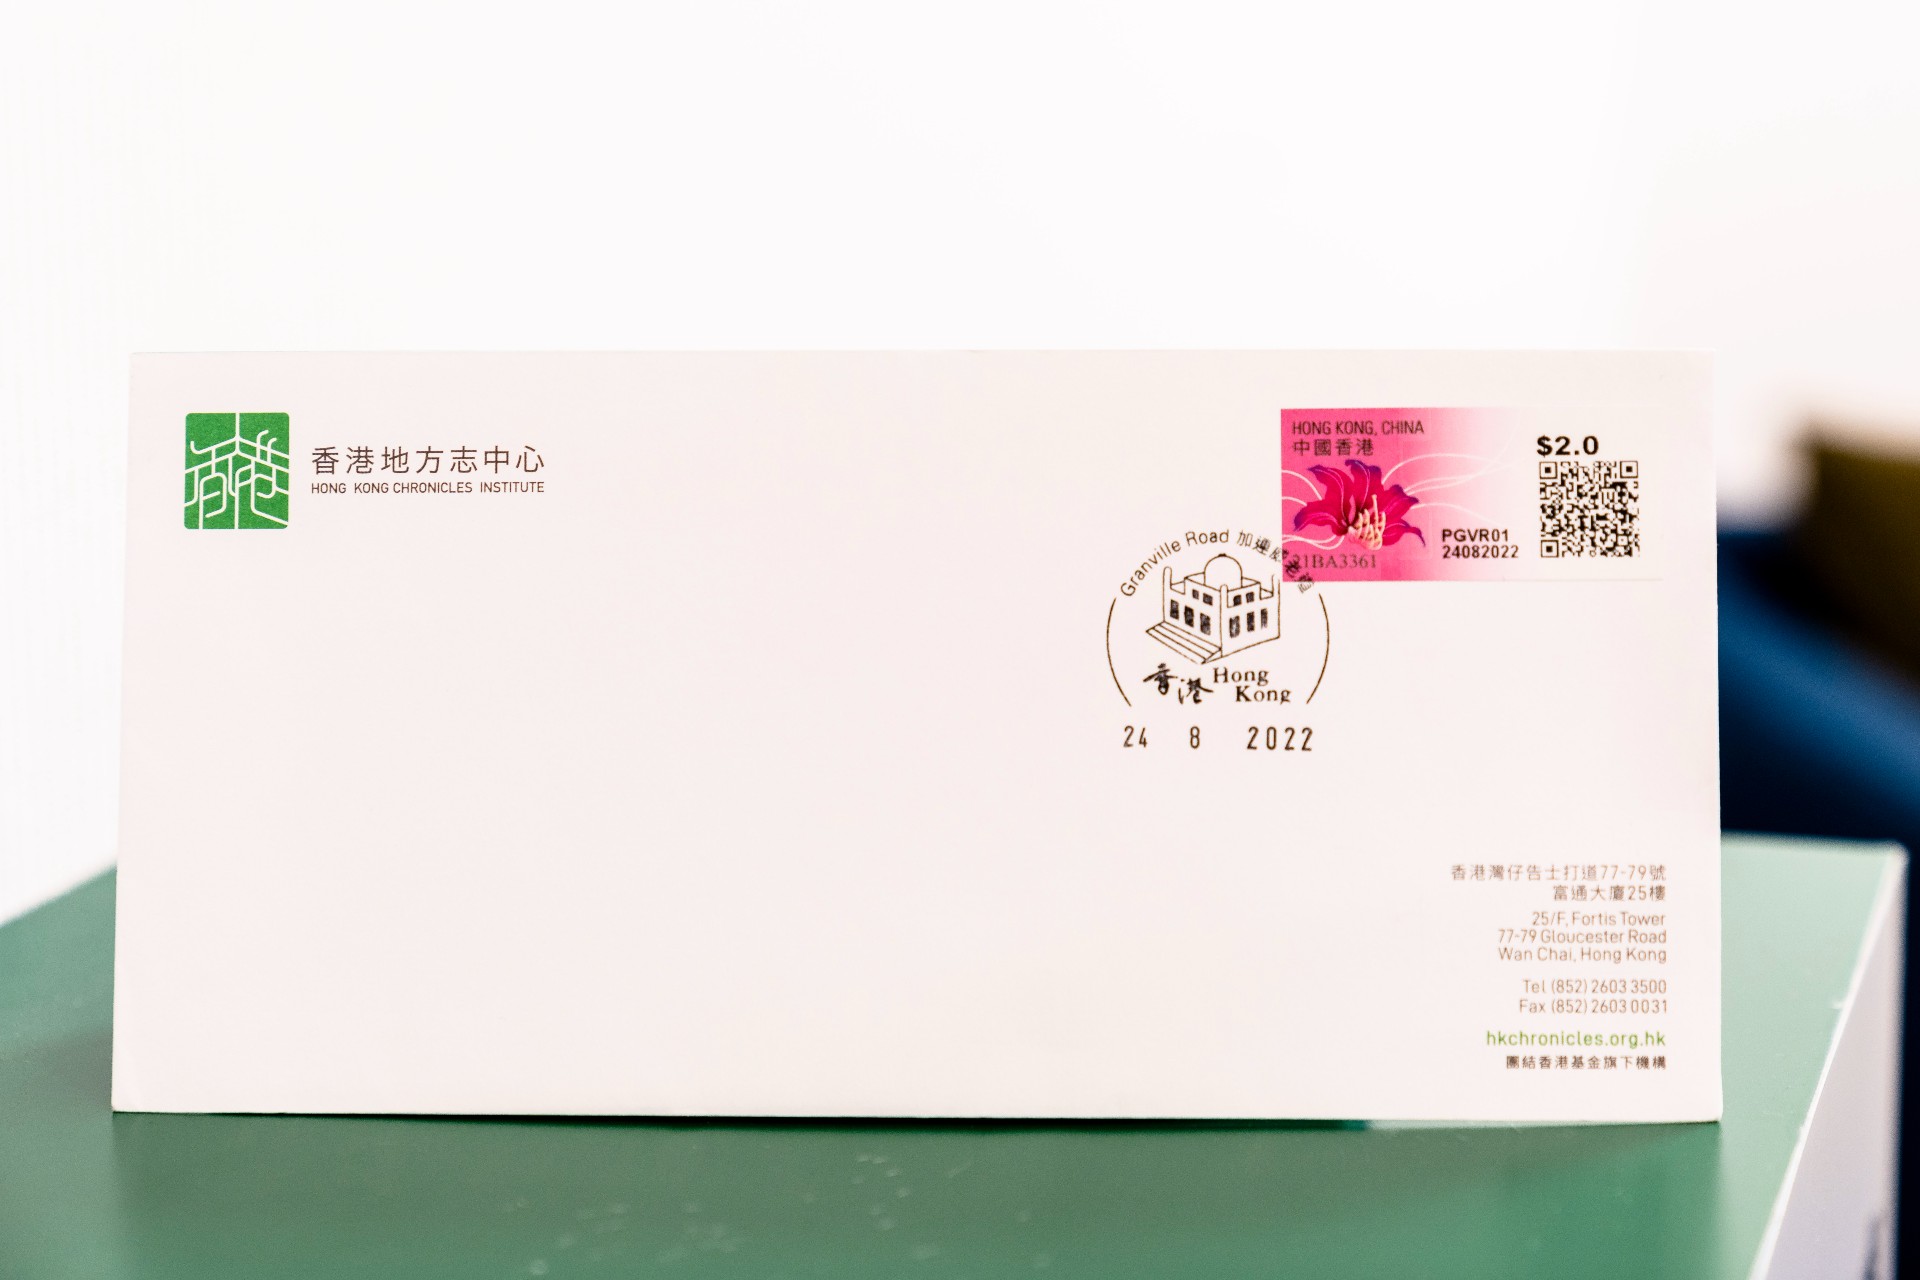 投入加連威老道郵局集郵信箱的信件以九龍清真寺圖案郵戳蓋印。